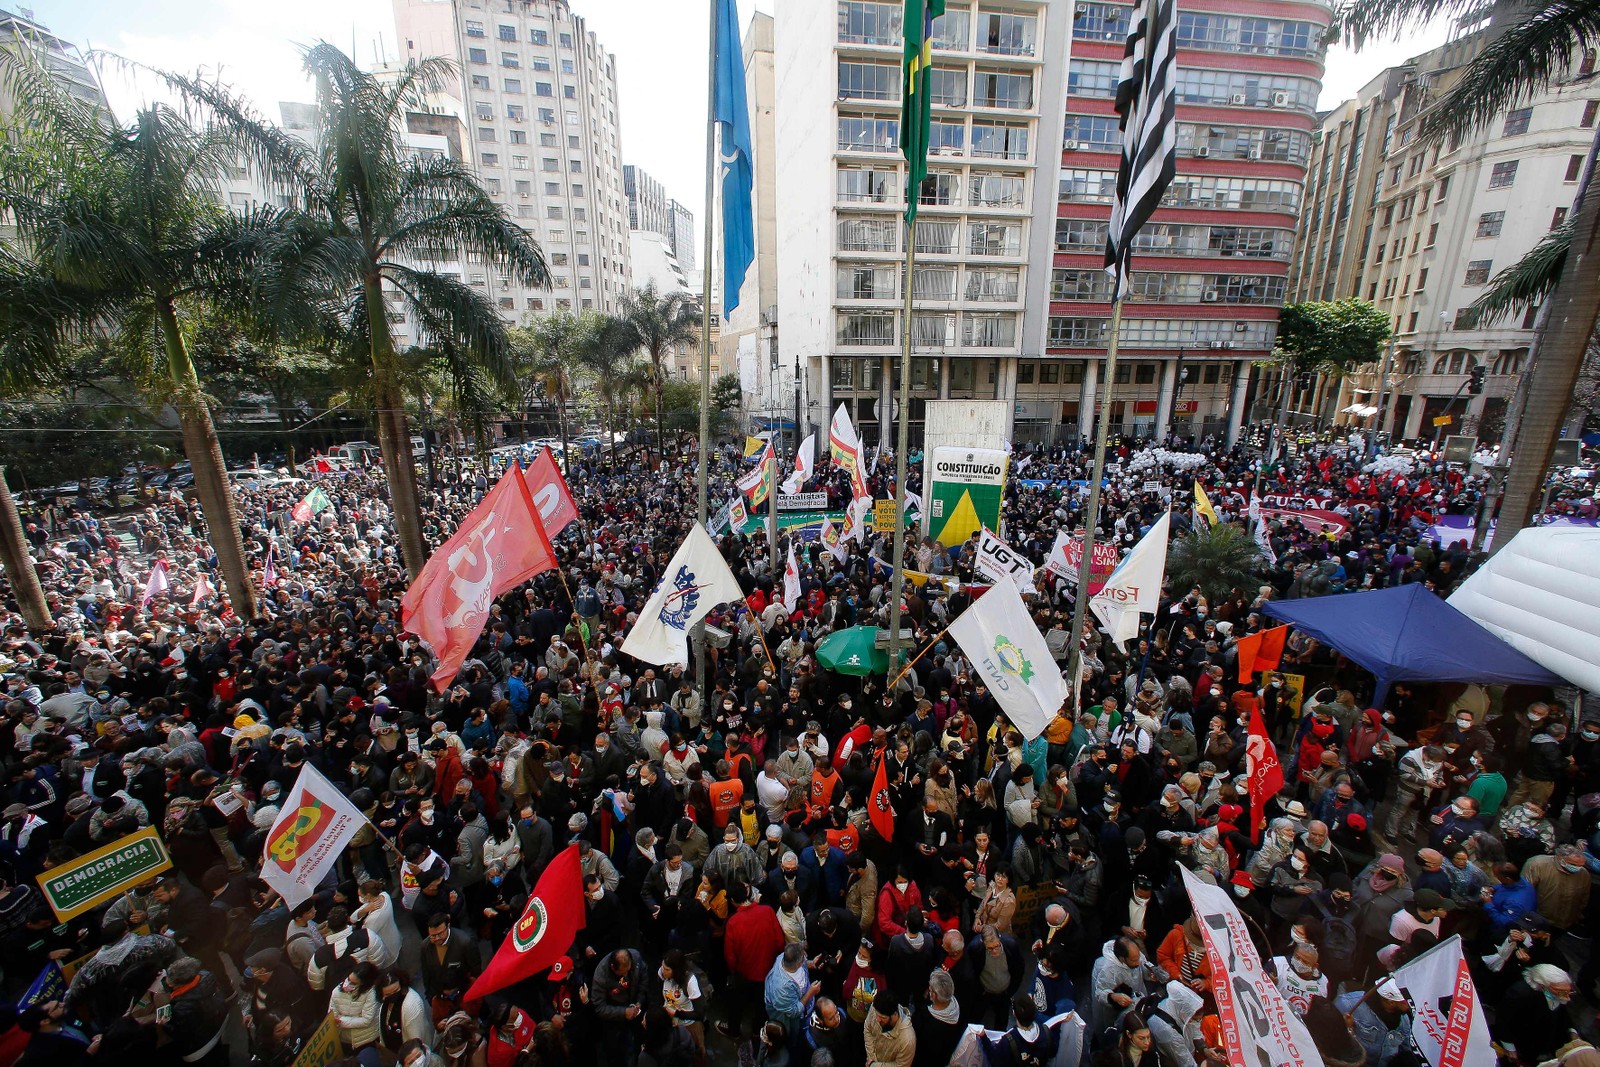 Movimentos sociais endossam ato pela democracia no Largo São Francisco, em São Paulo — Foto: MIGUEL SCHINCARIOL / AFP